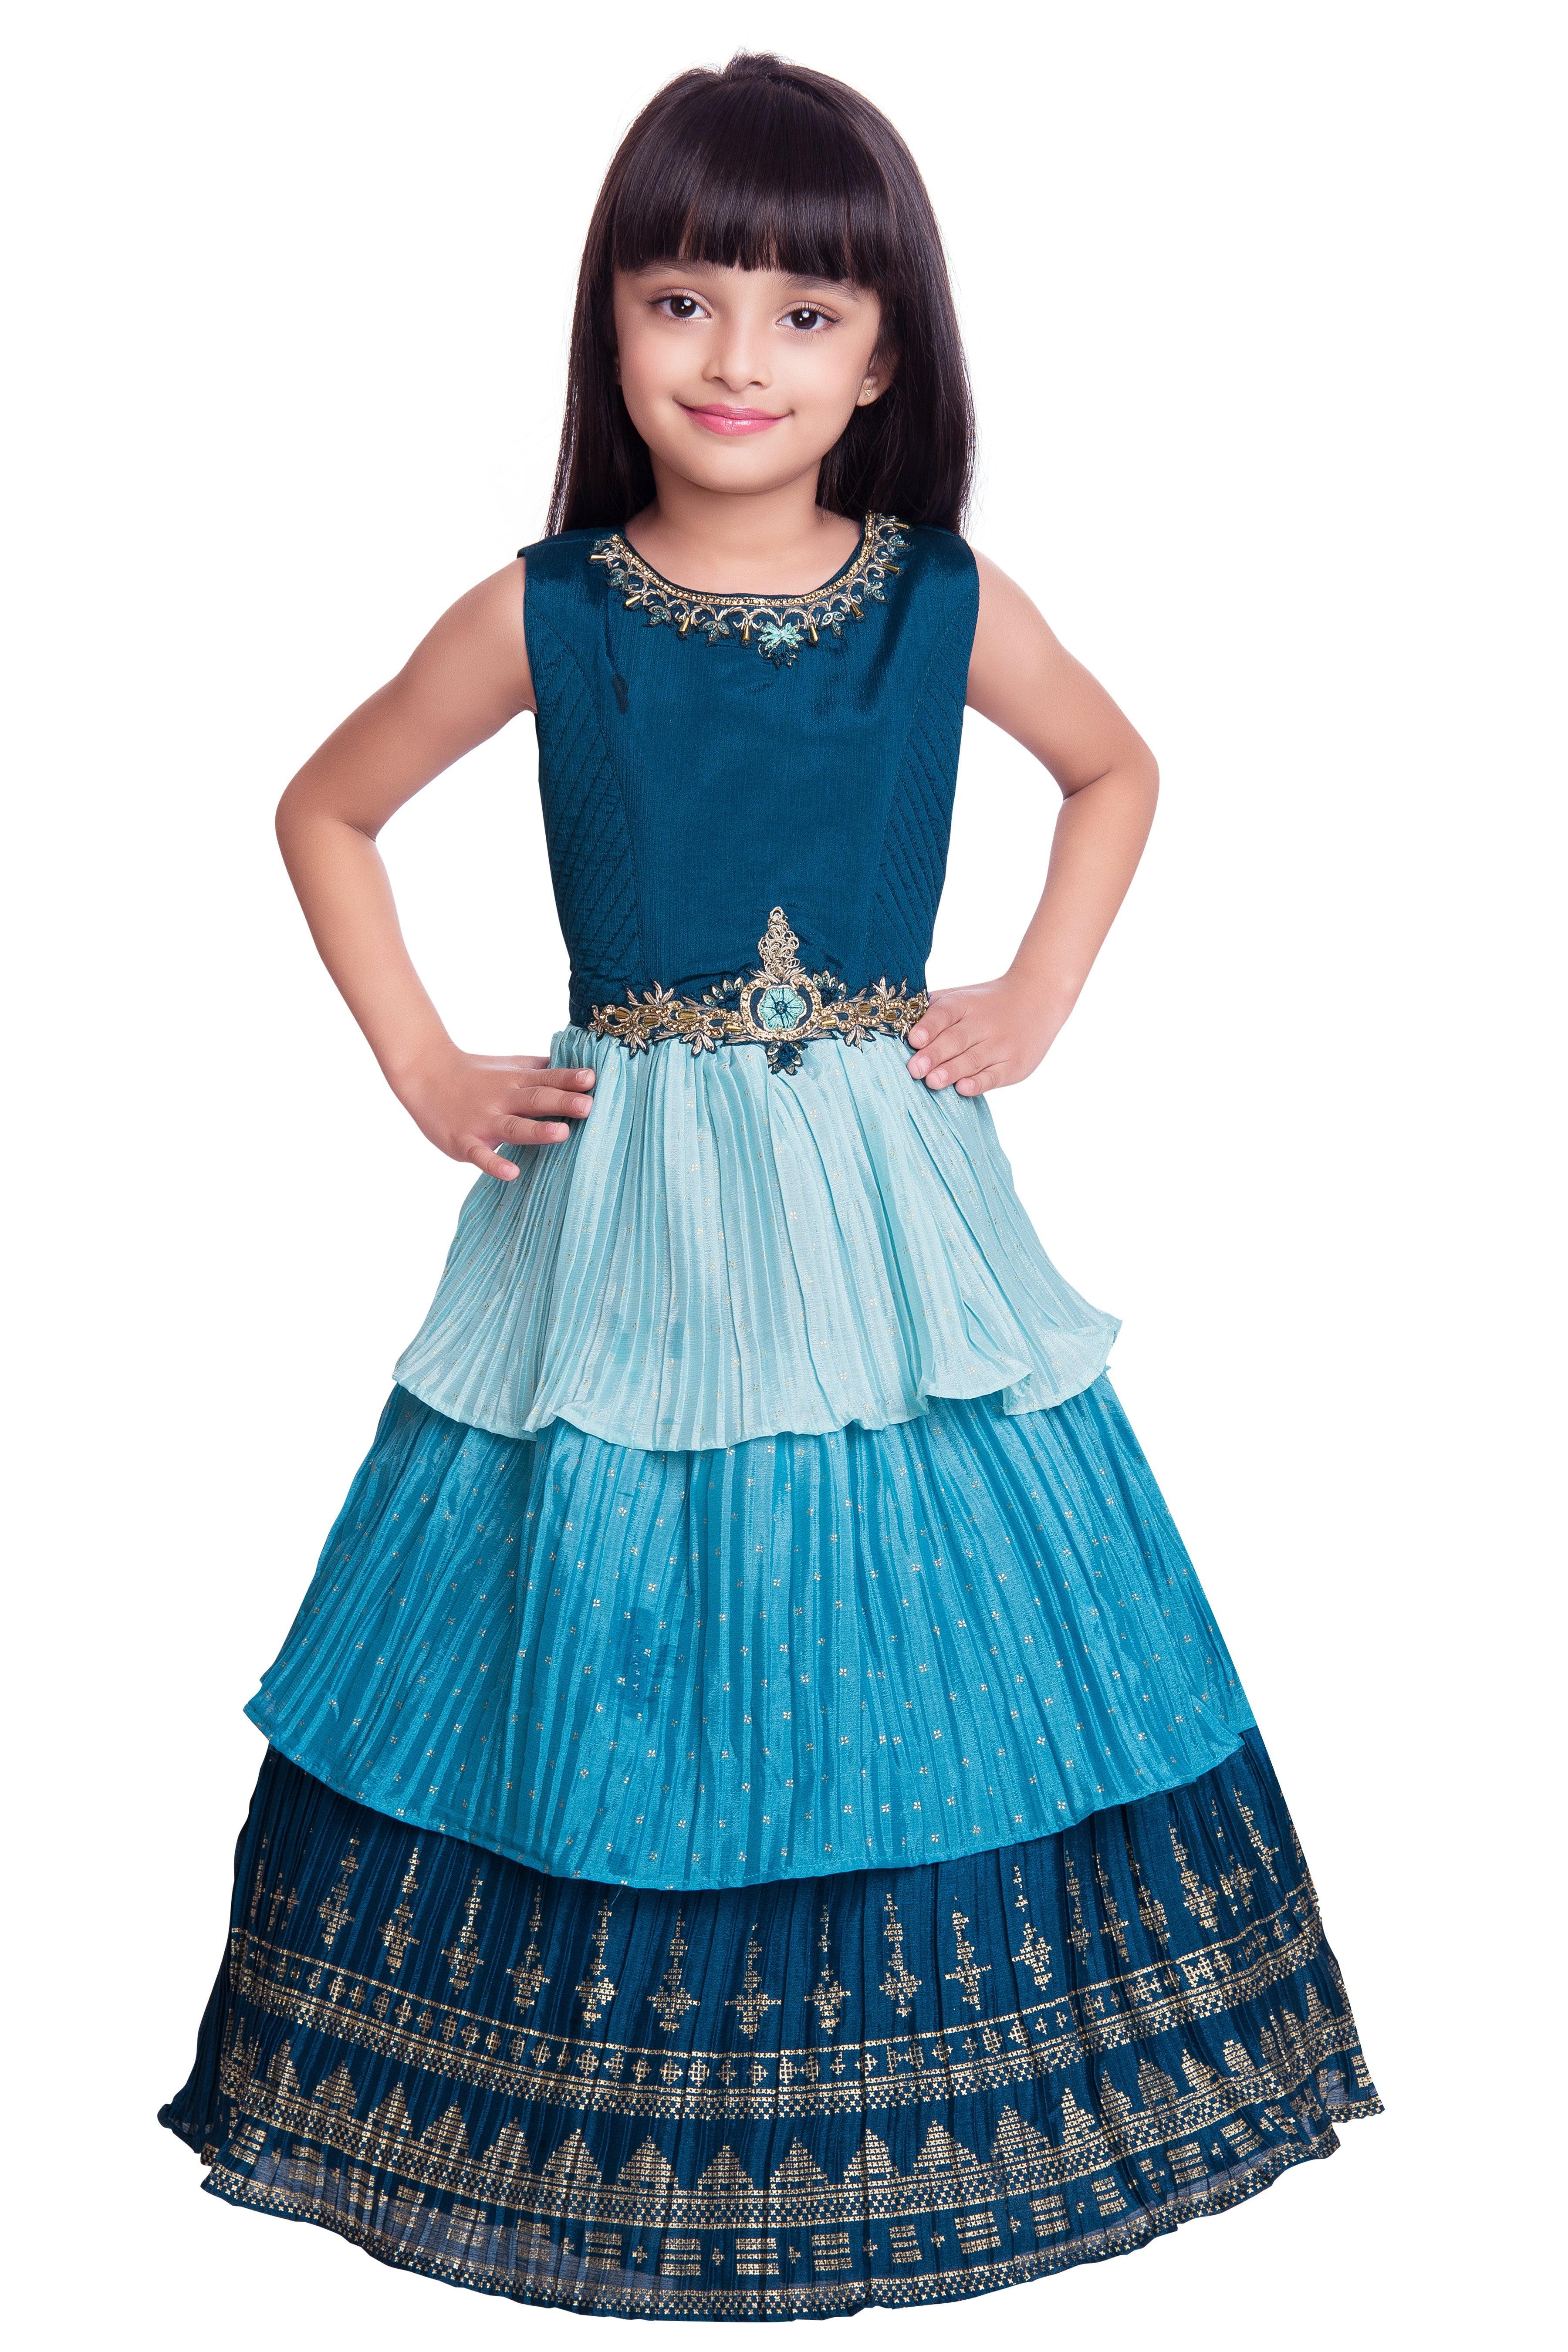 Myaara Blue Cotton Lurex Ethnic Dress with Tassels